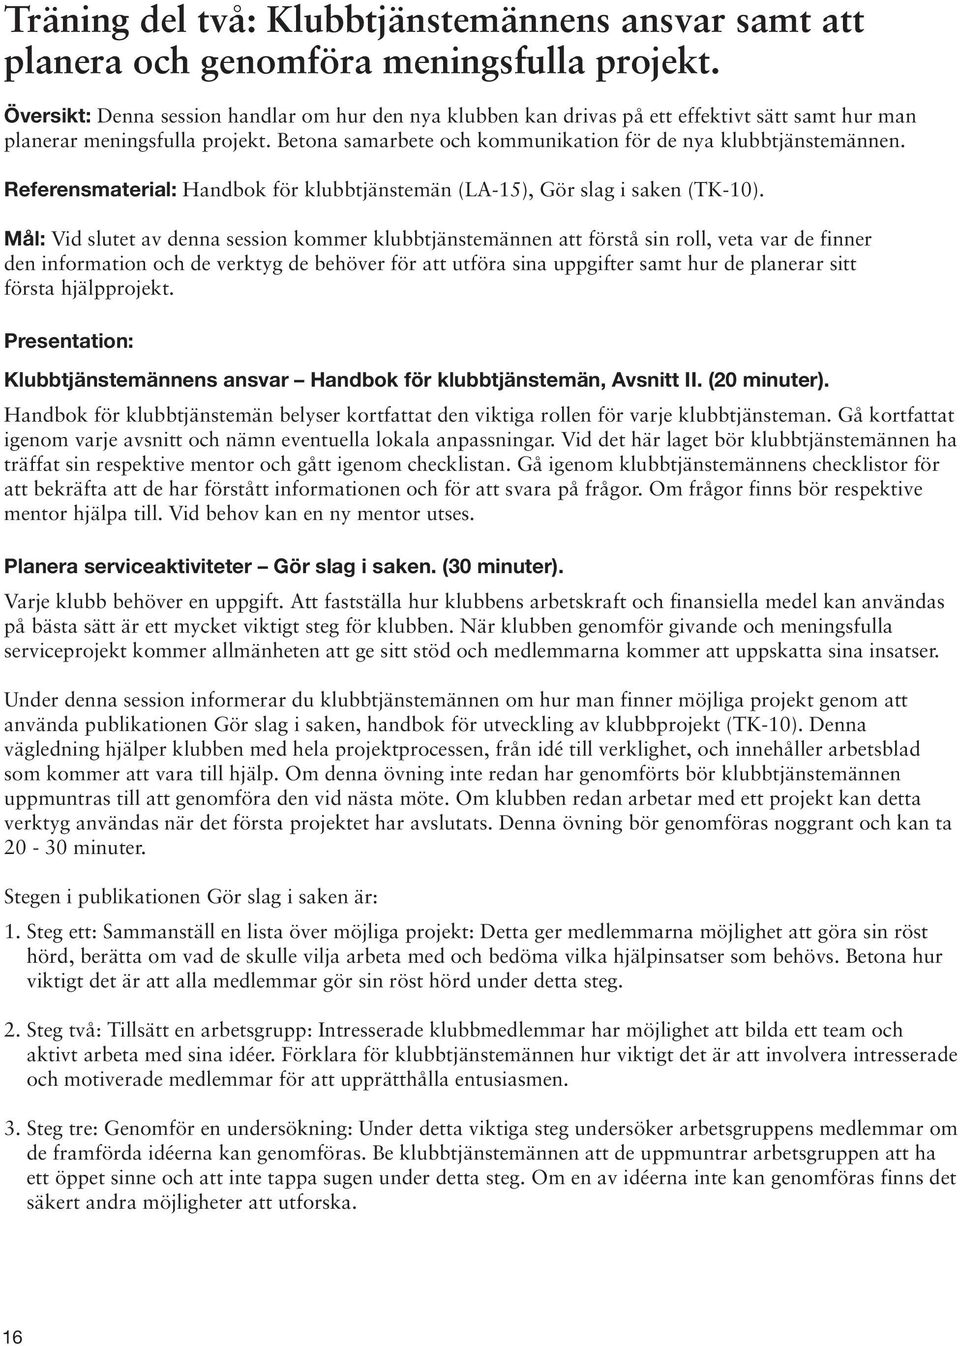 Referensmaterial: Handbok för klubbtjänstemän (LA-15), Gör slag i saken (TK-10).